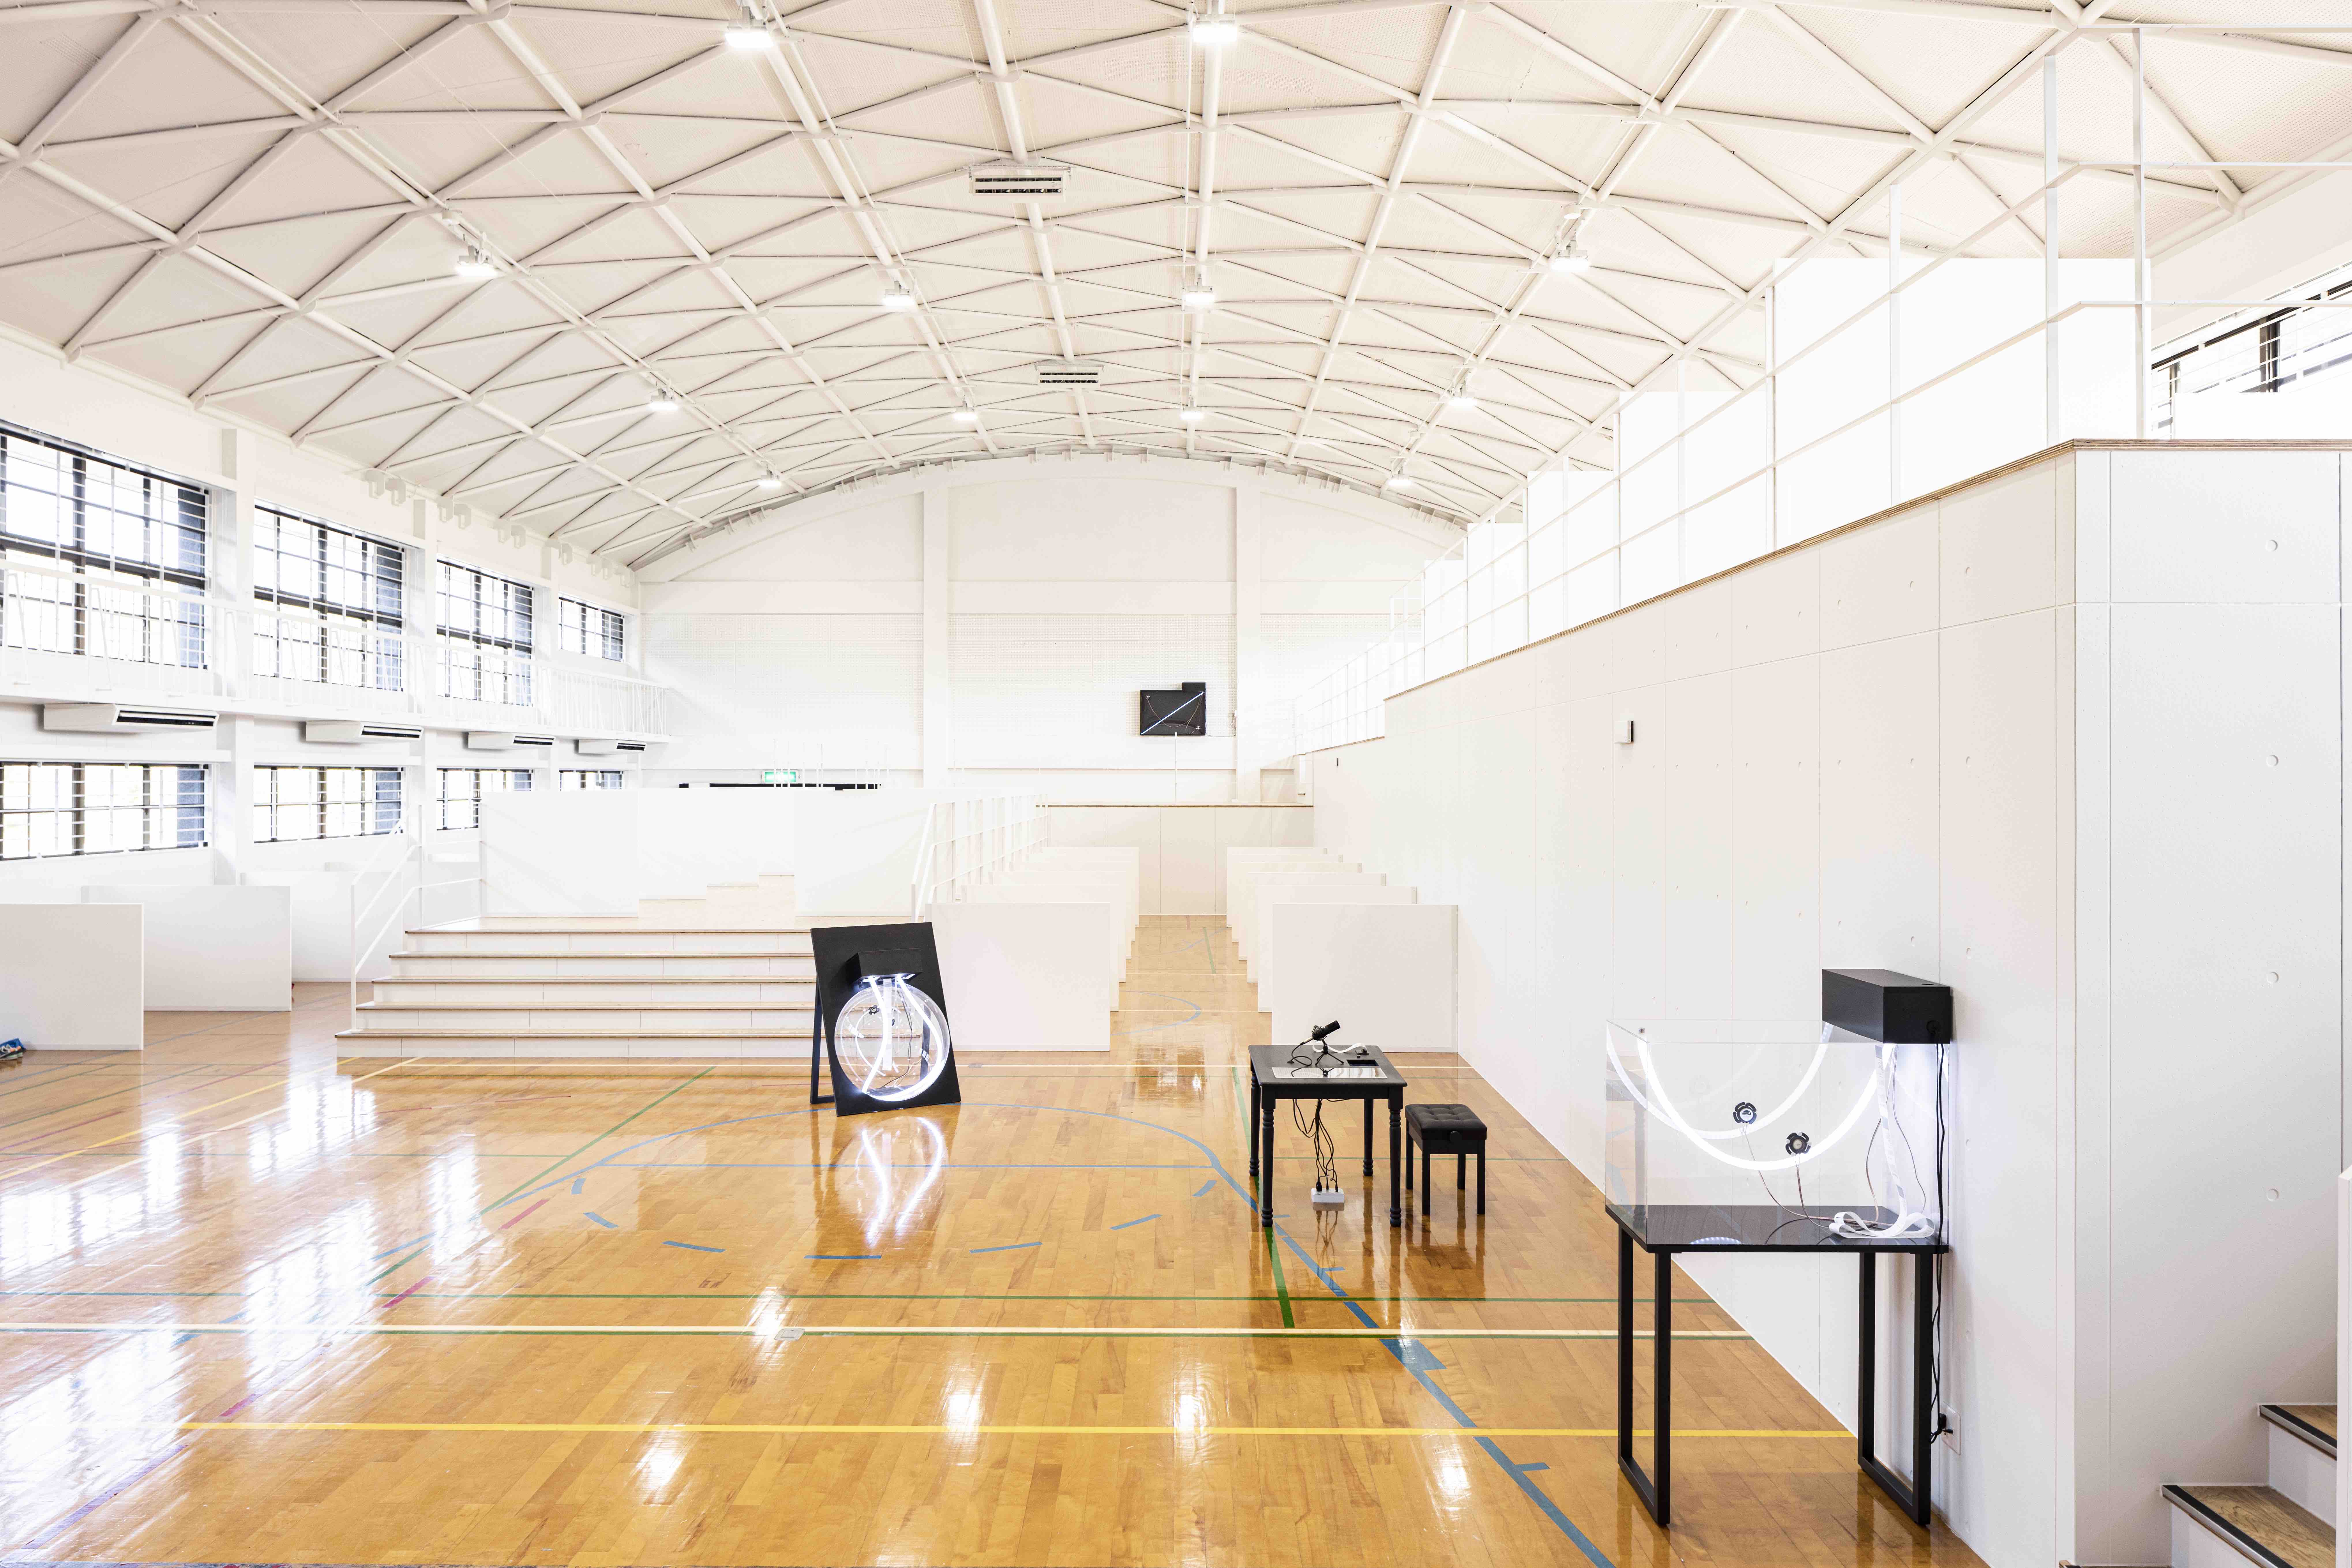 TRIAL IoT Lab（旧宮田西中学校）の体育館に展示される日山さんが制作した「at here」。空間全体を活かした作品となっている。